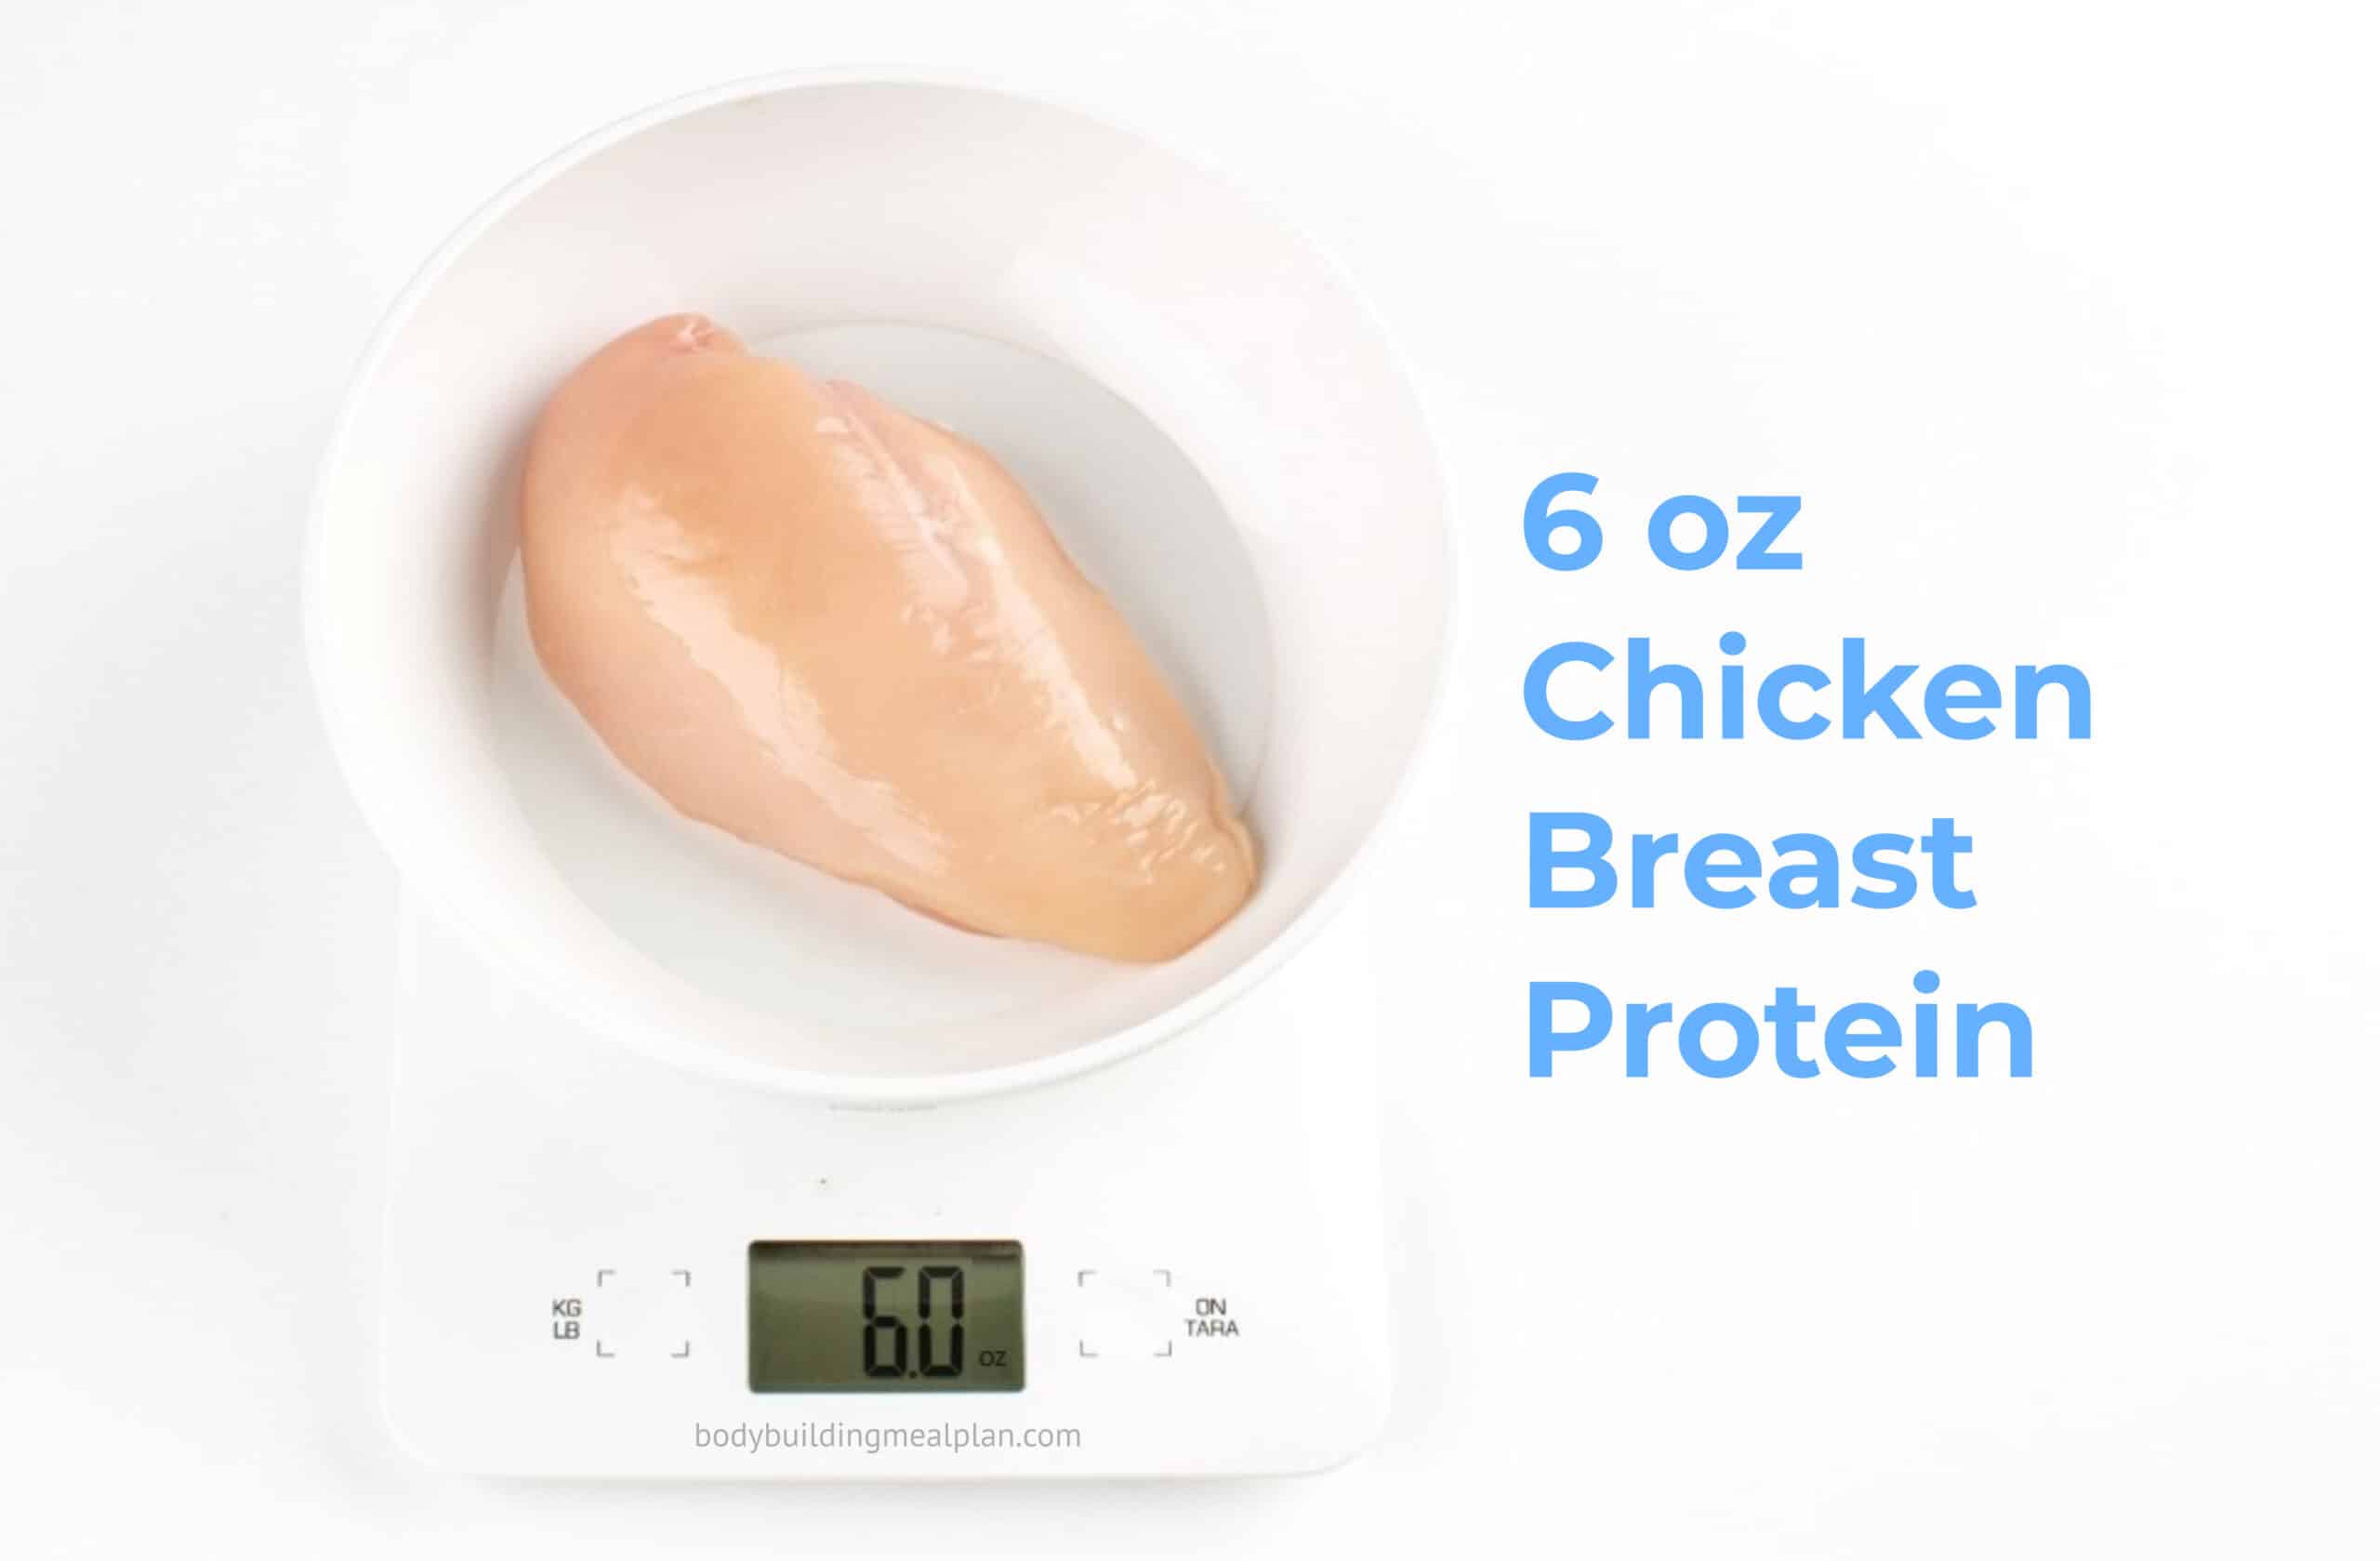 6 oz Chicken Breast Protein